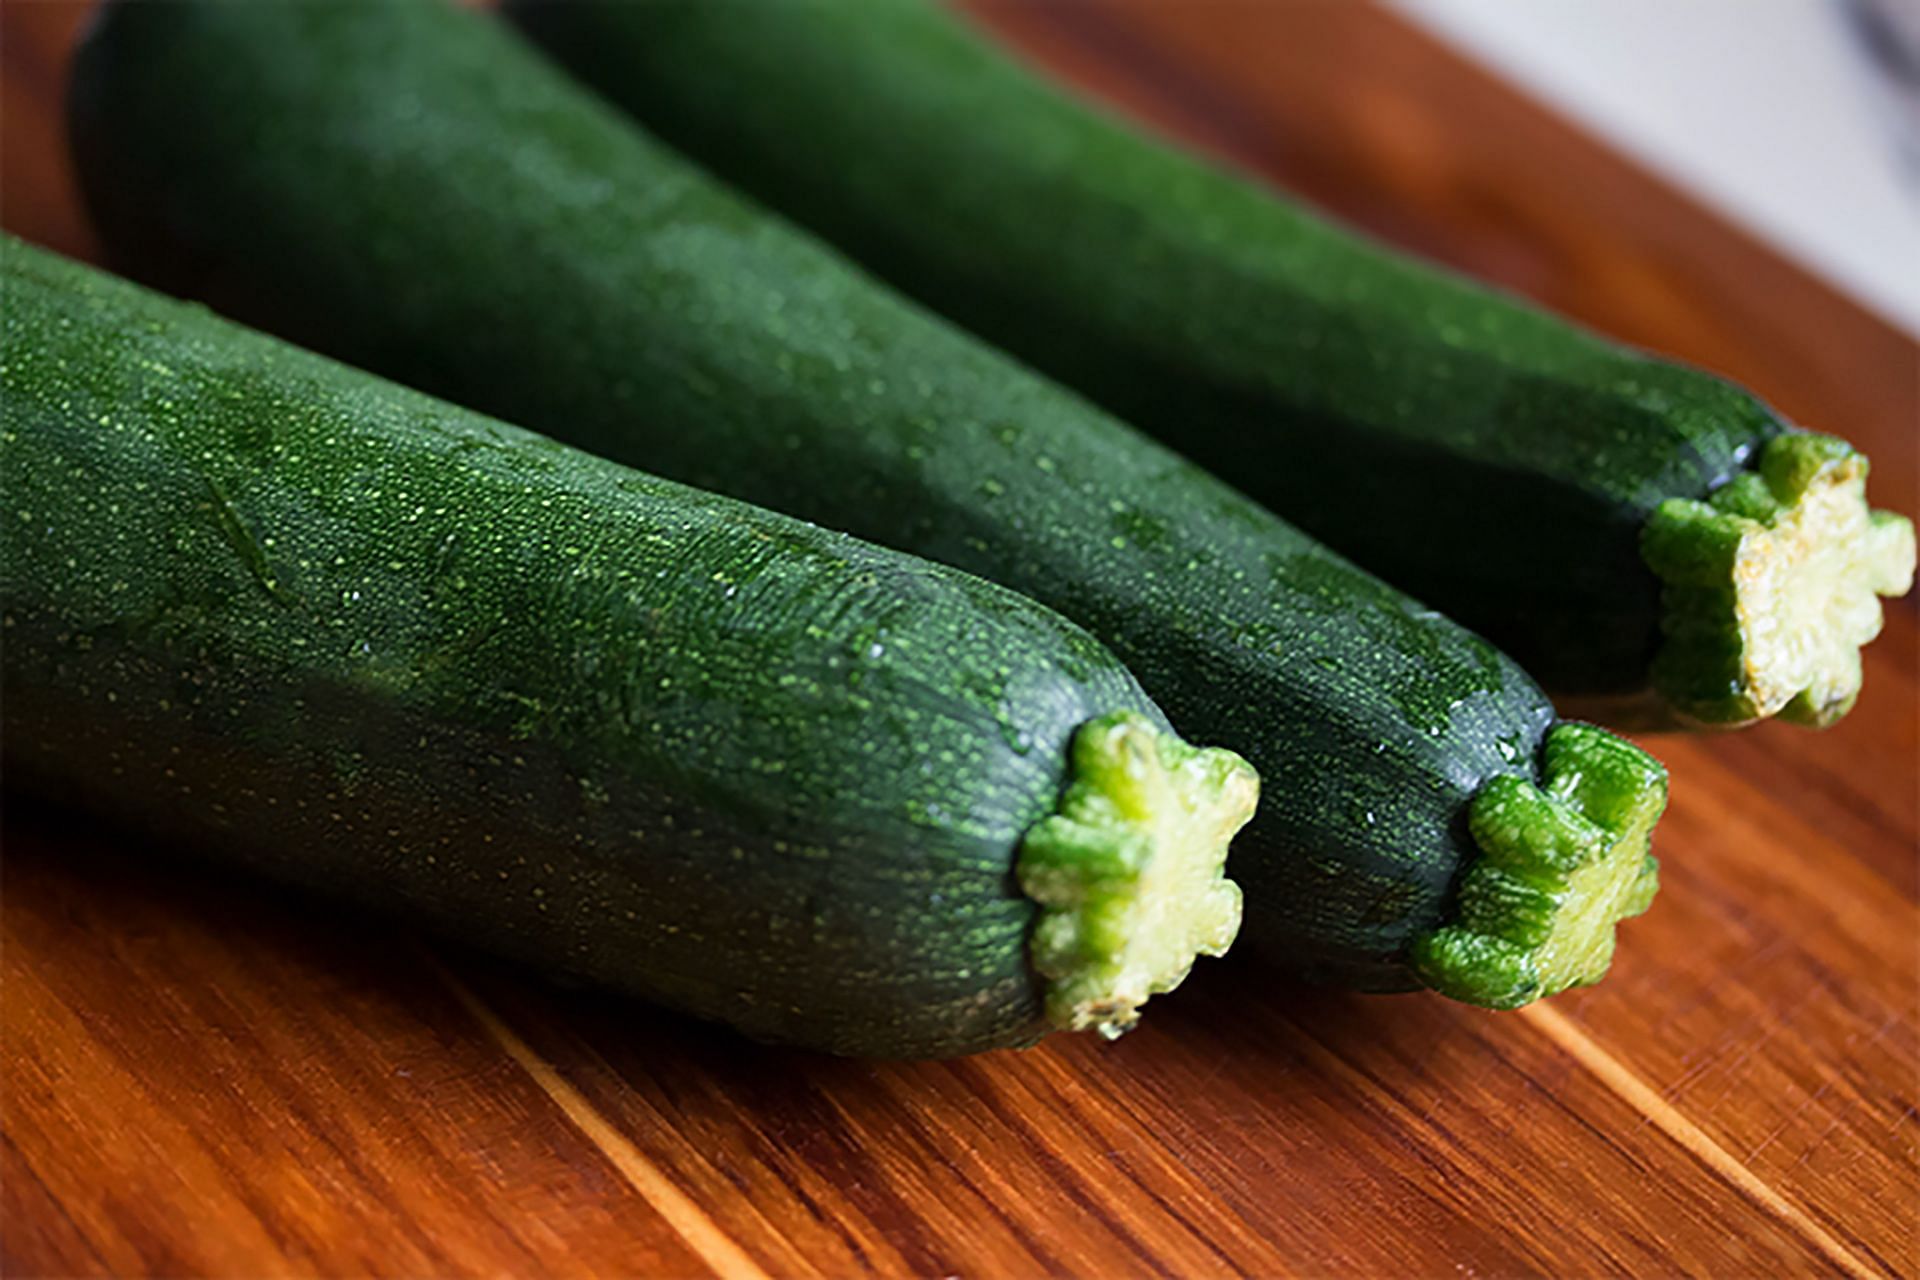 Cucumbers (Image via Pexels/Angele J)